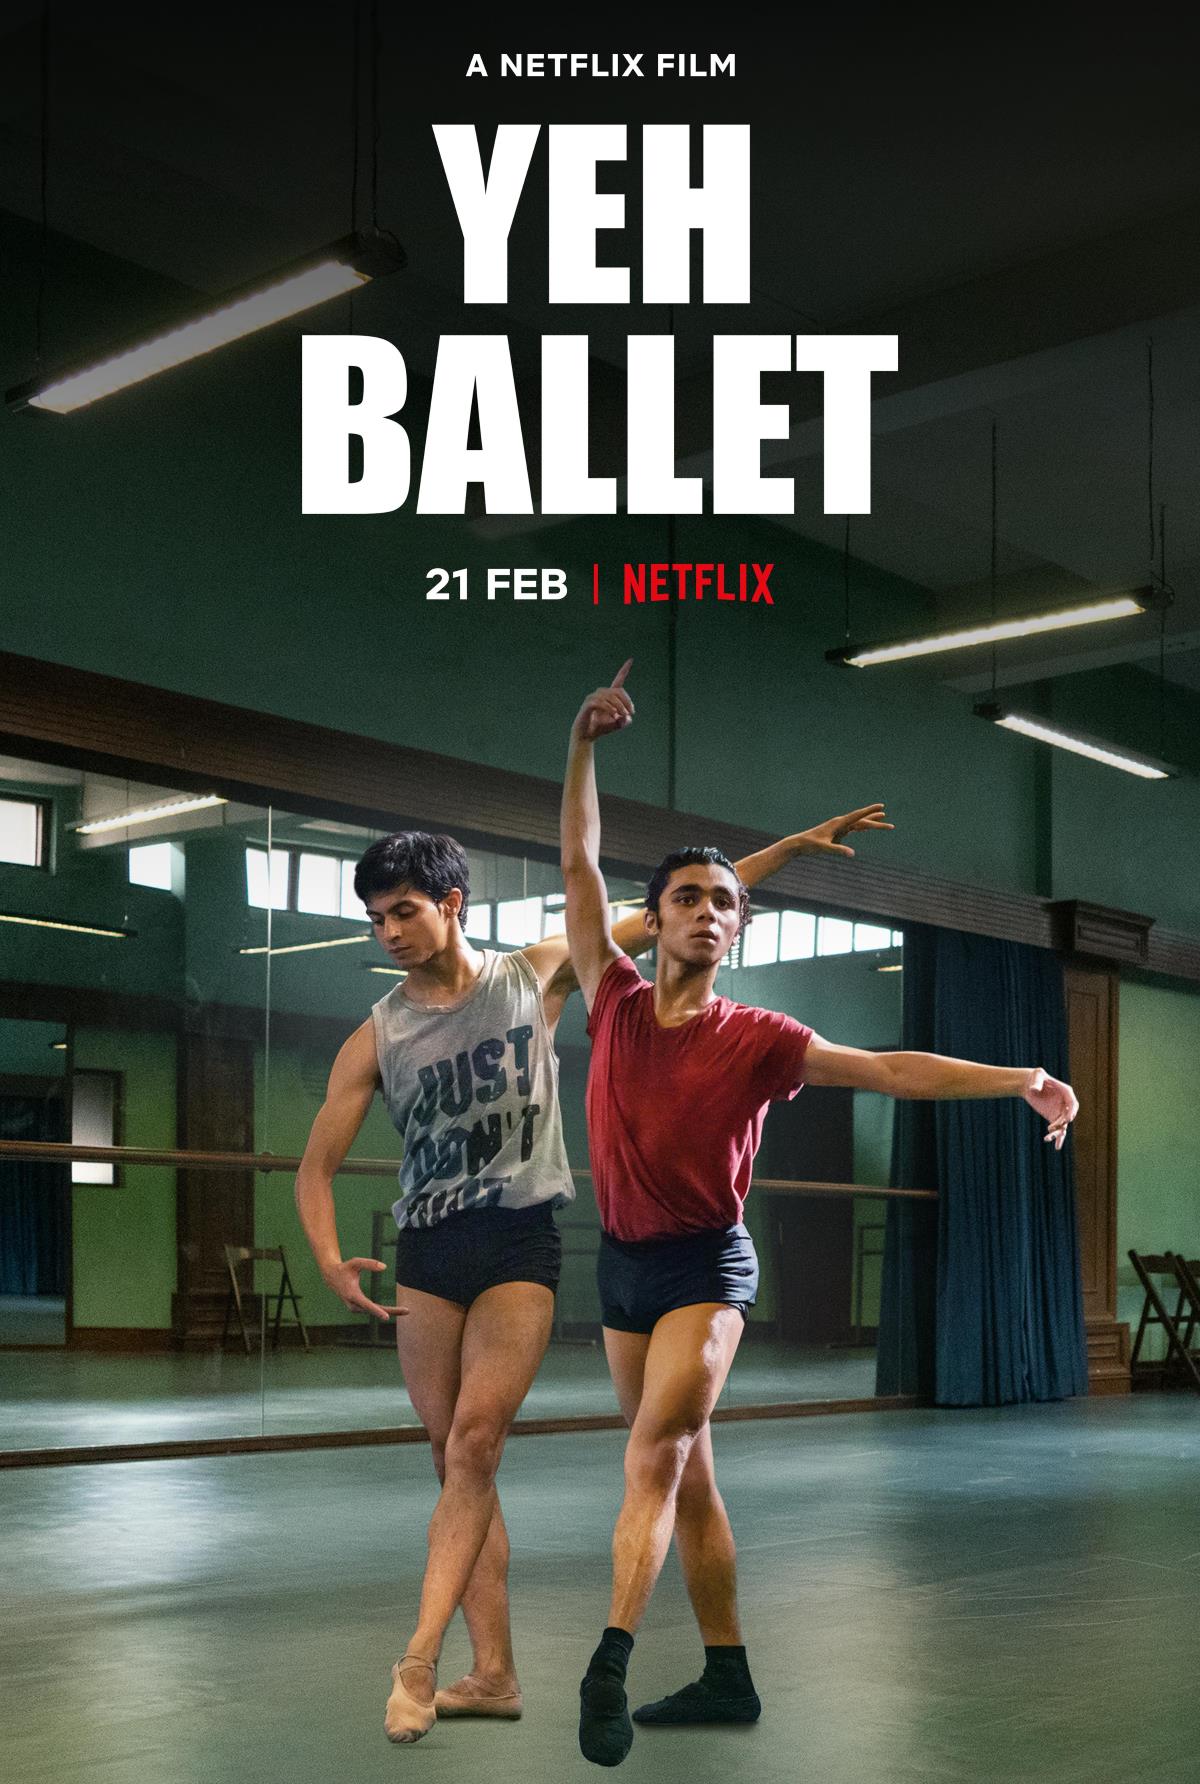 Yeh Ballet (2020) Türkçe Altyazılı izle